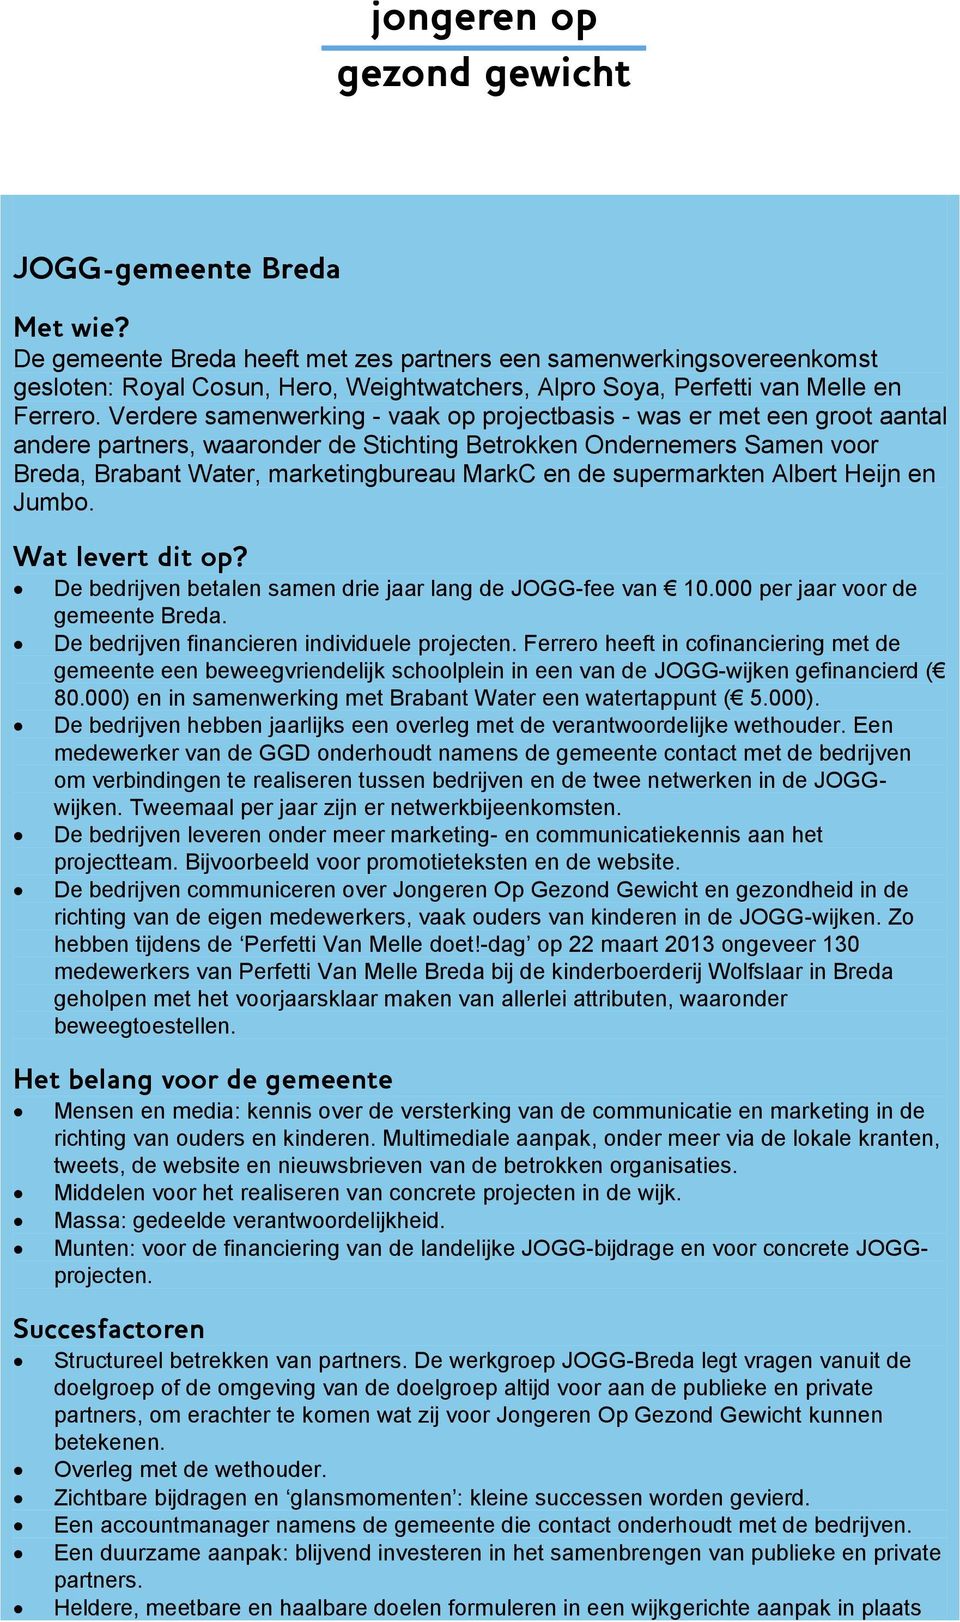 supermarkten Albert Heijn en Jumb. Wat levert dit p? De bedrijven betalen samen drie jaar lang de JOGG-fee van 10.000 per jaar vr de gemeente Breda. De bedrijven financieren individuele prjecten.